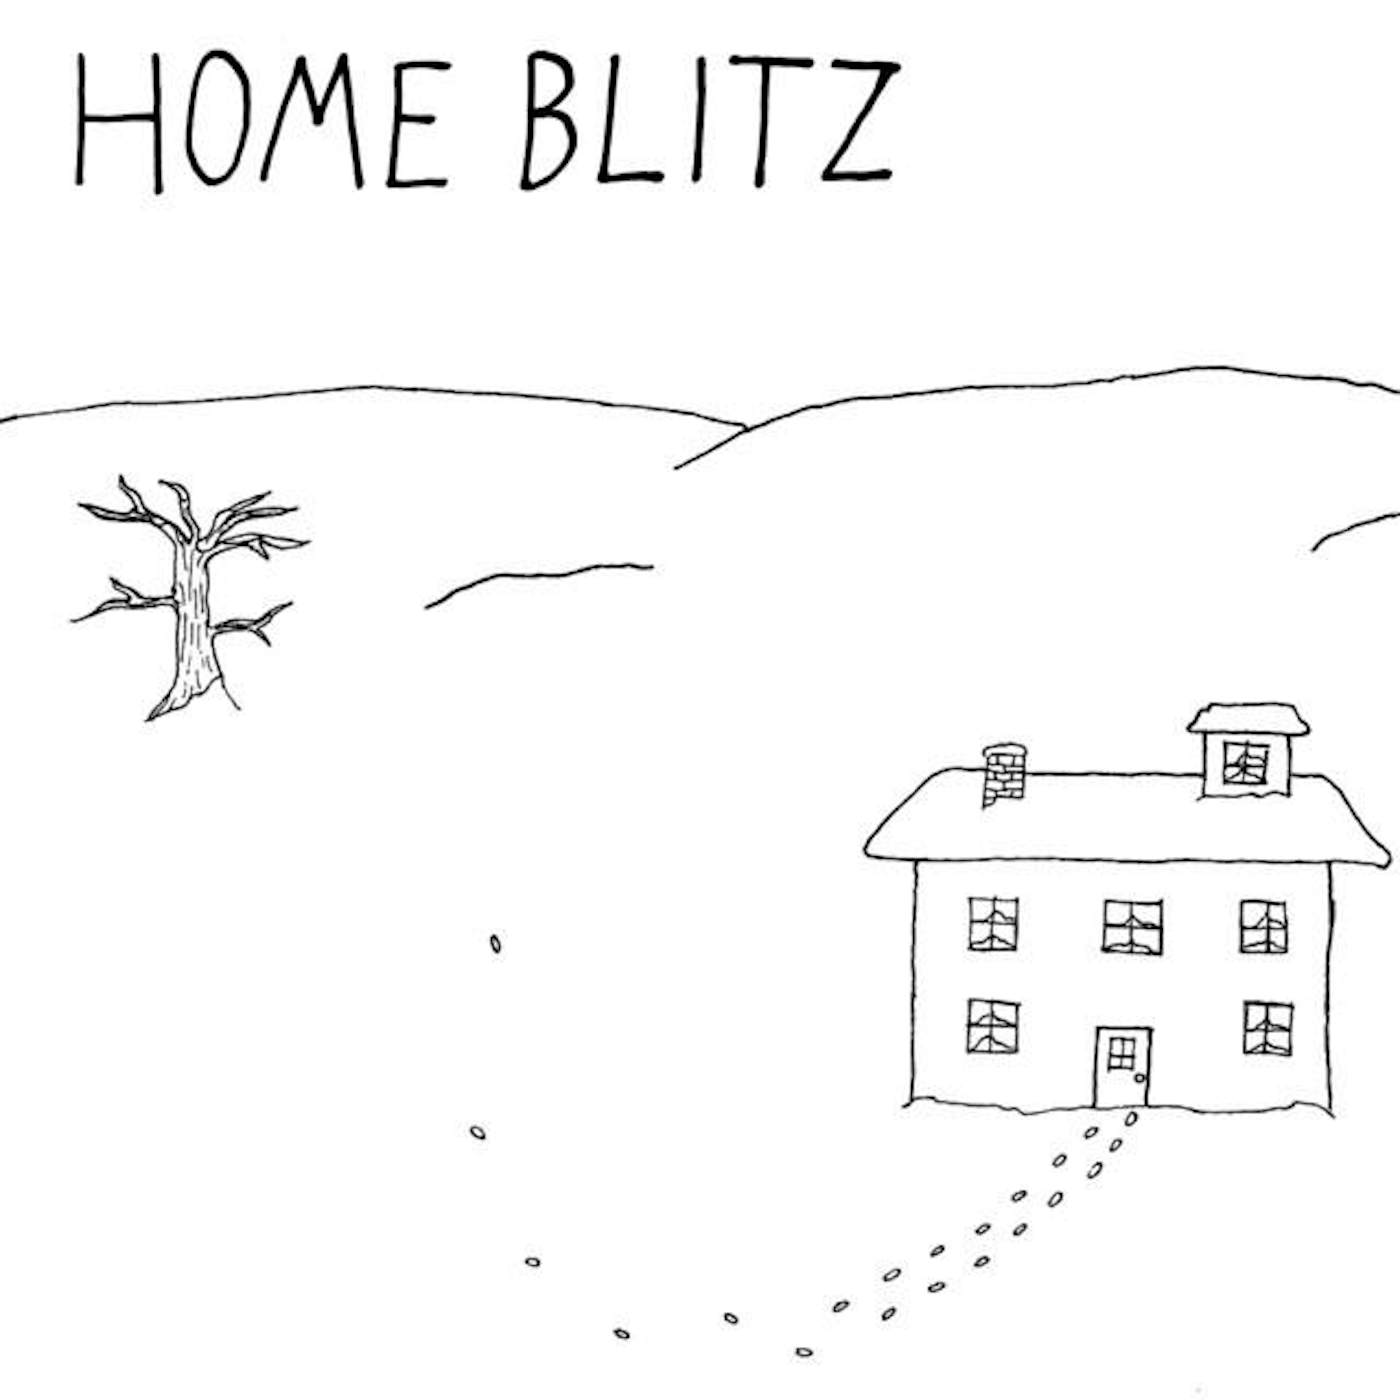 Home Blitz